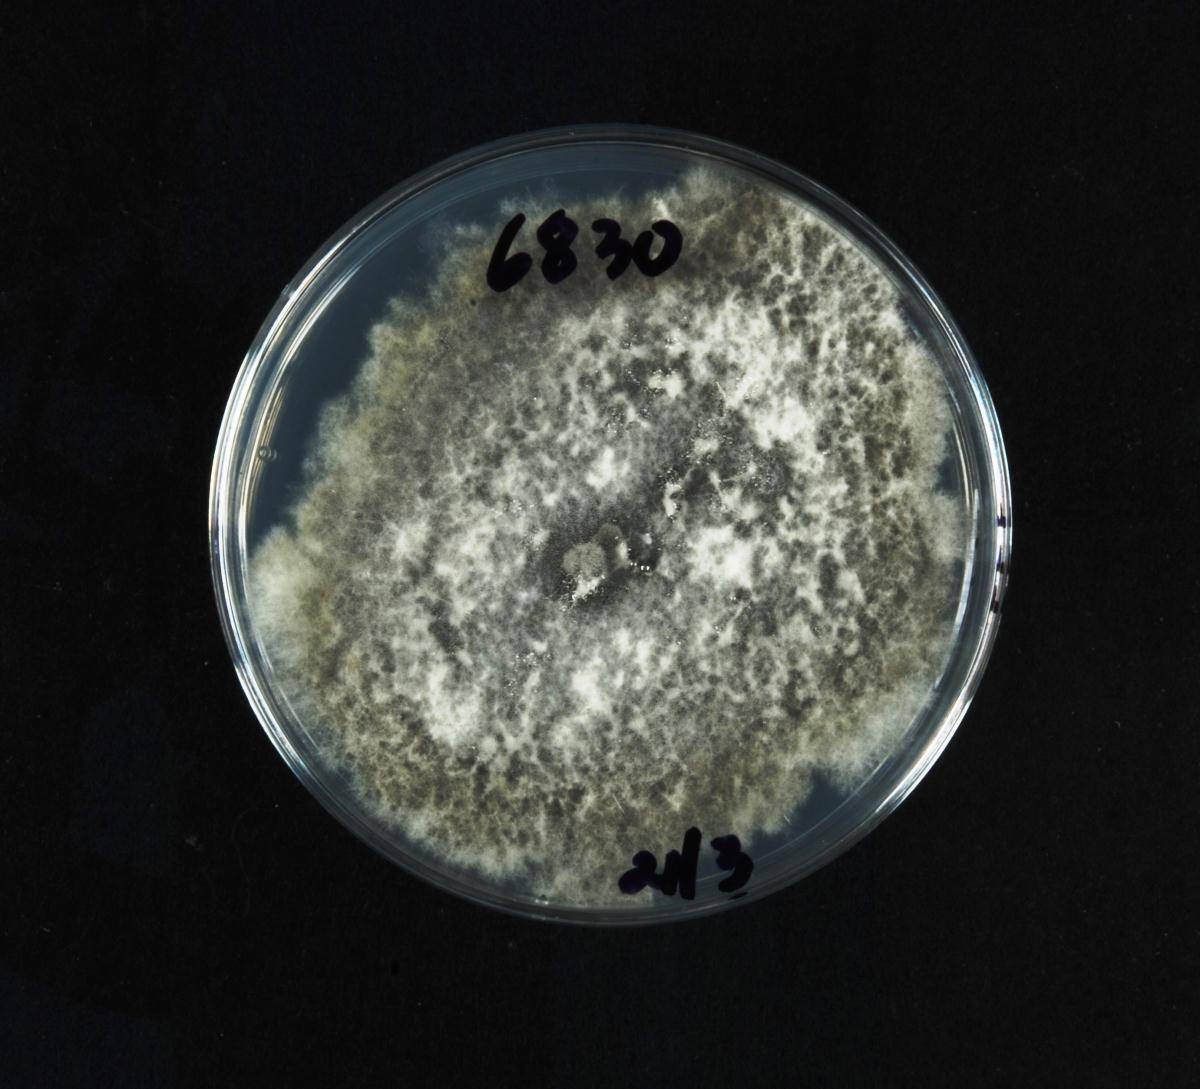 Neofusicoccum parvum image